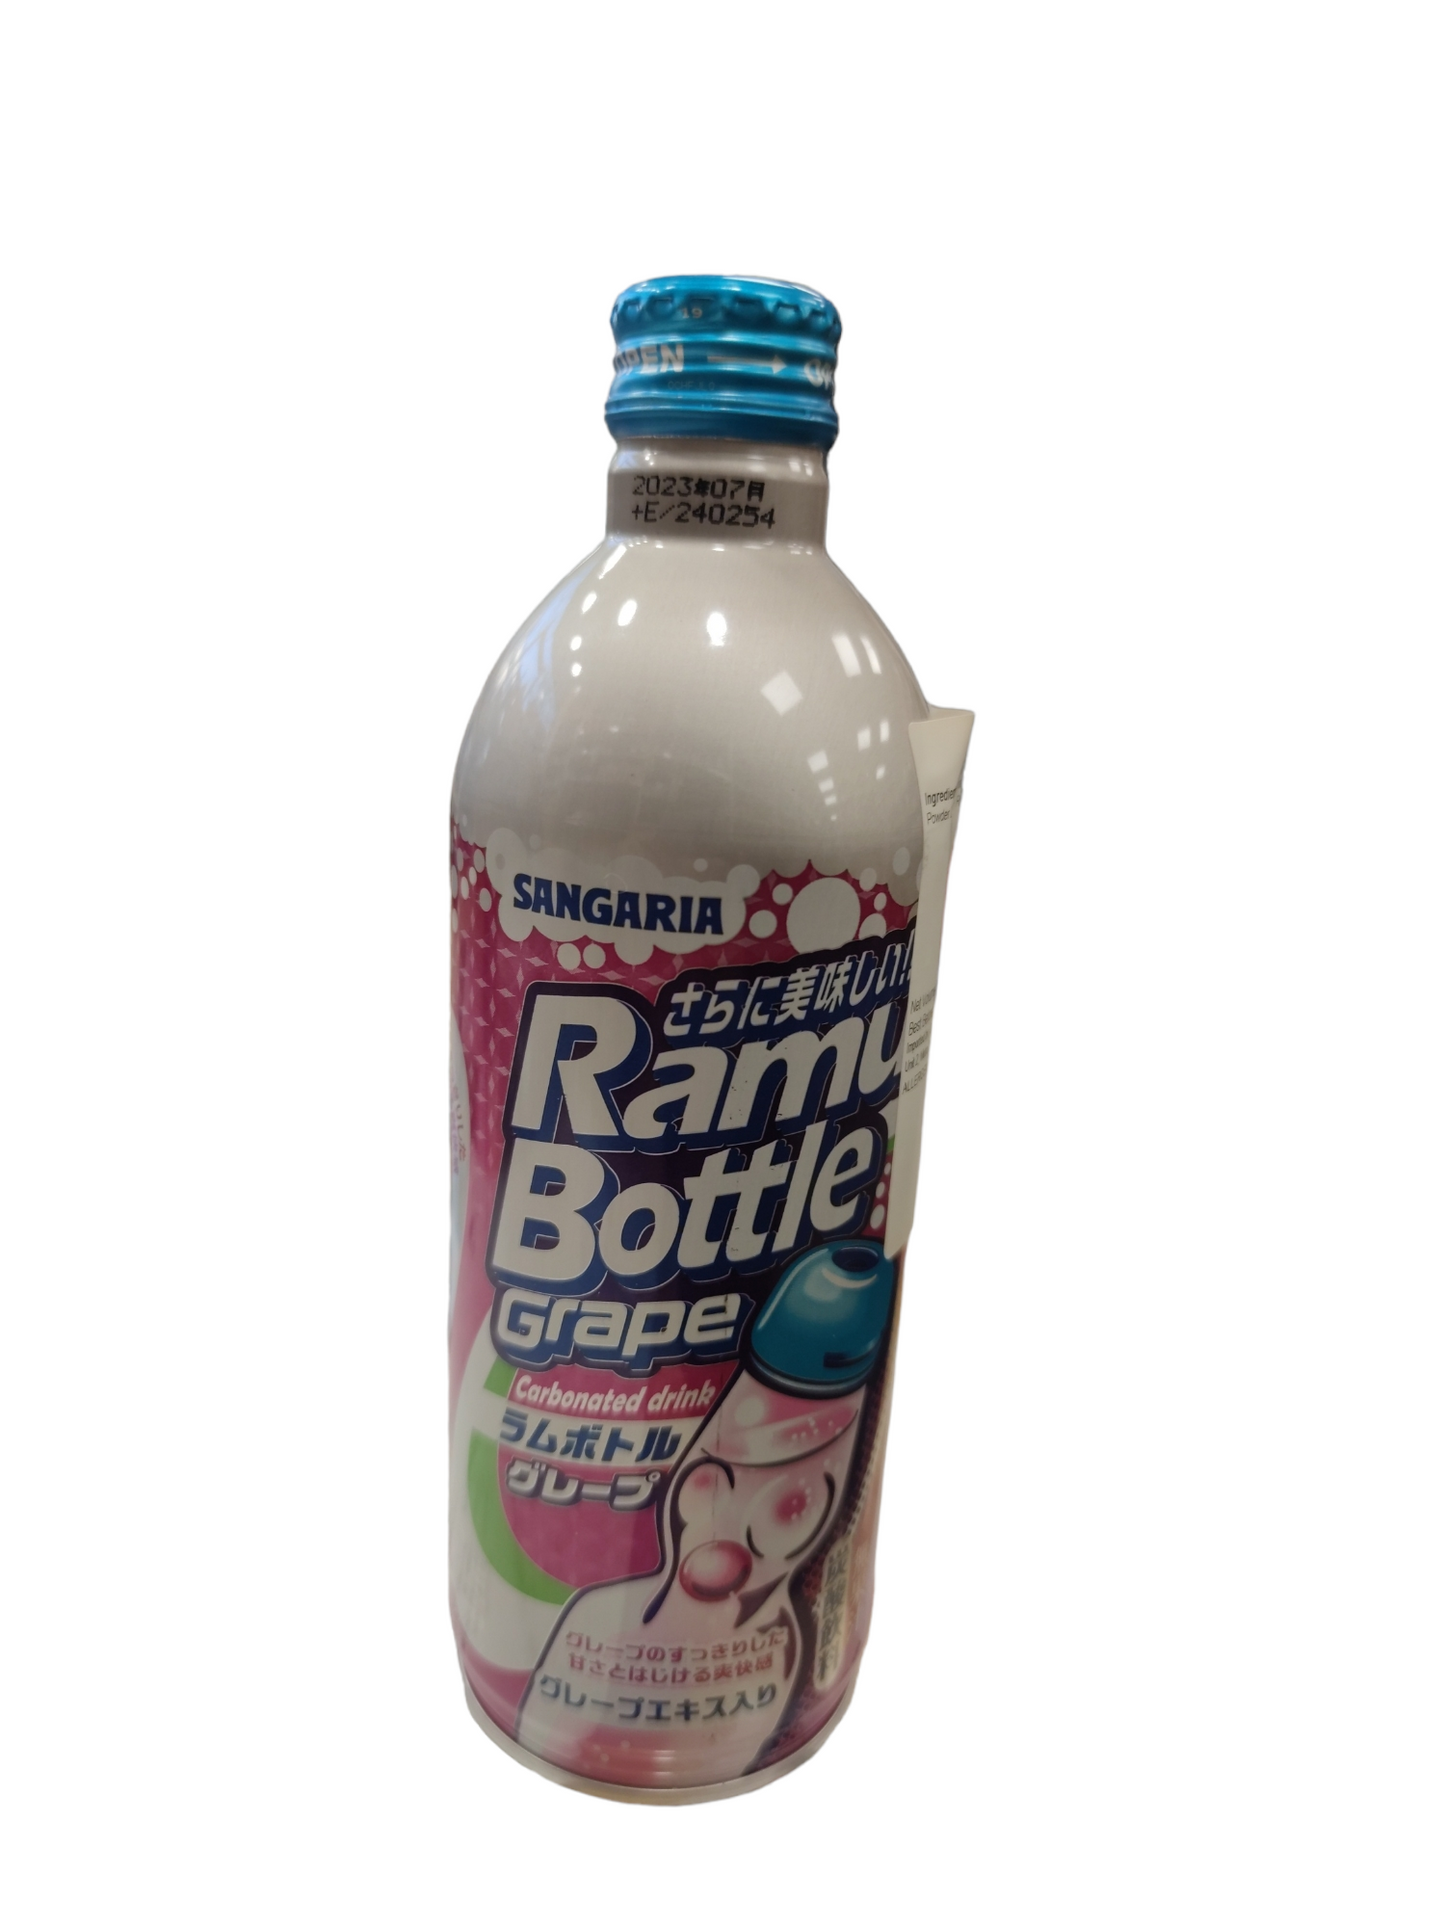 Sangaria Ramu Bottle-Grape  500ml 三佳麗葡萄味汽水